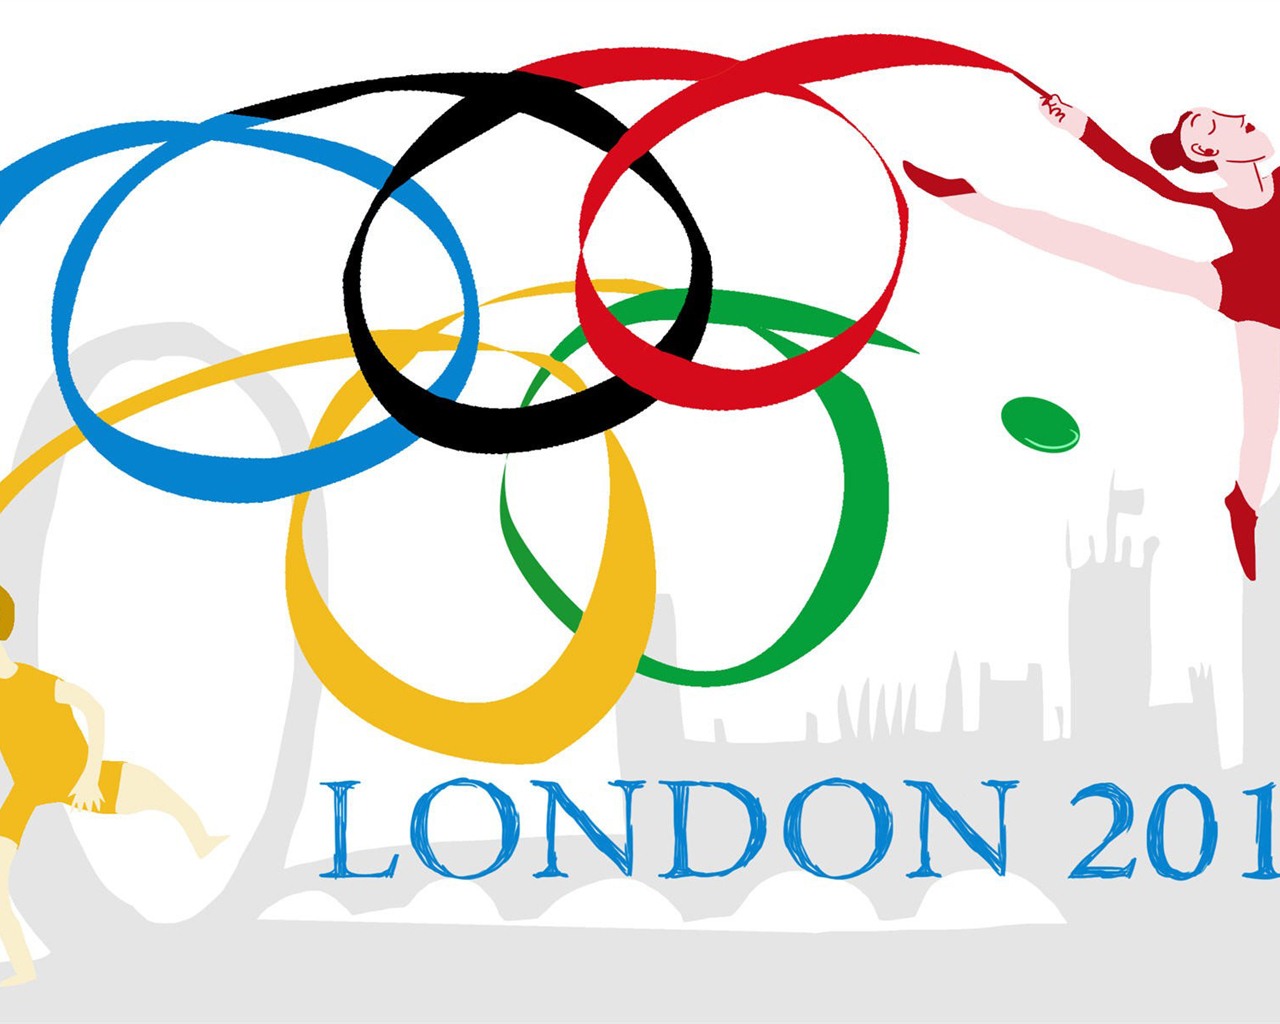 Londres 2012 Olimpiadas fondos temáticos (2) #16 - 1280x1024